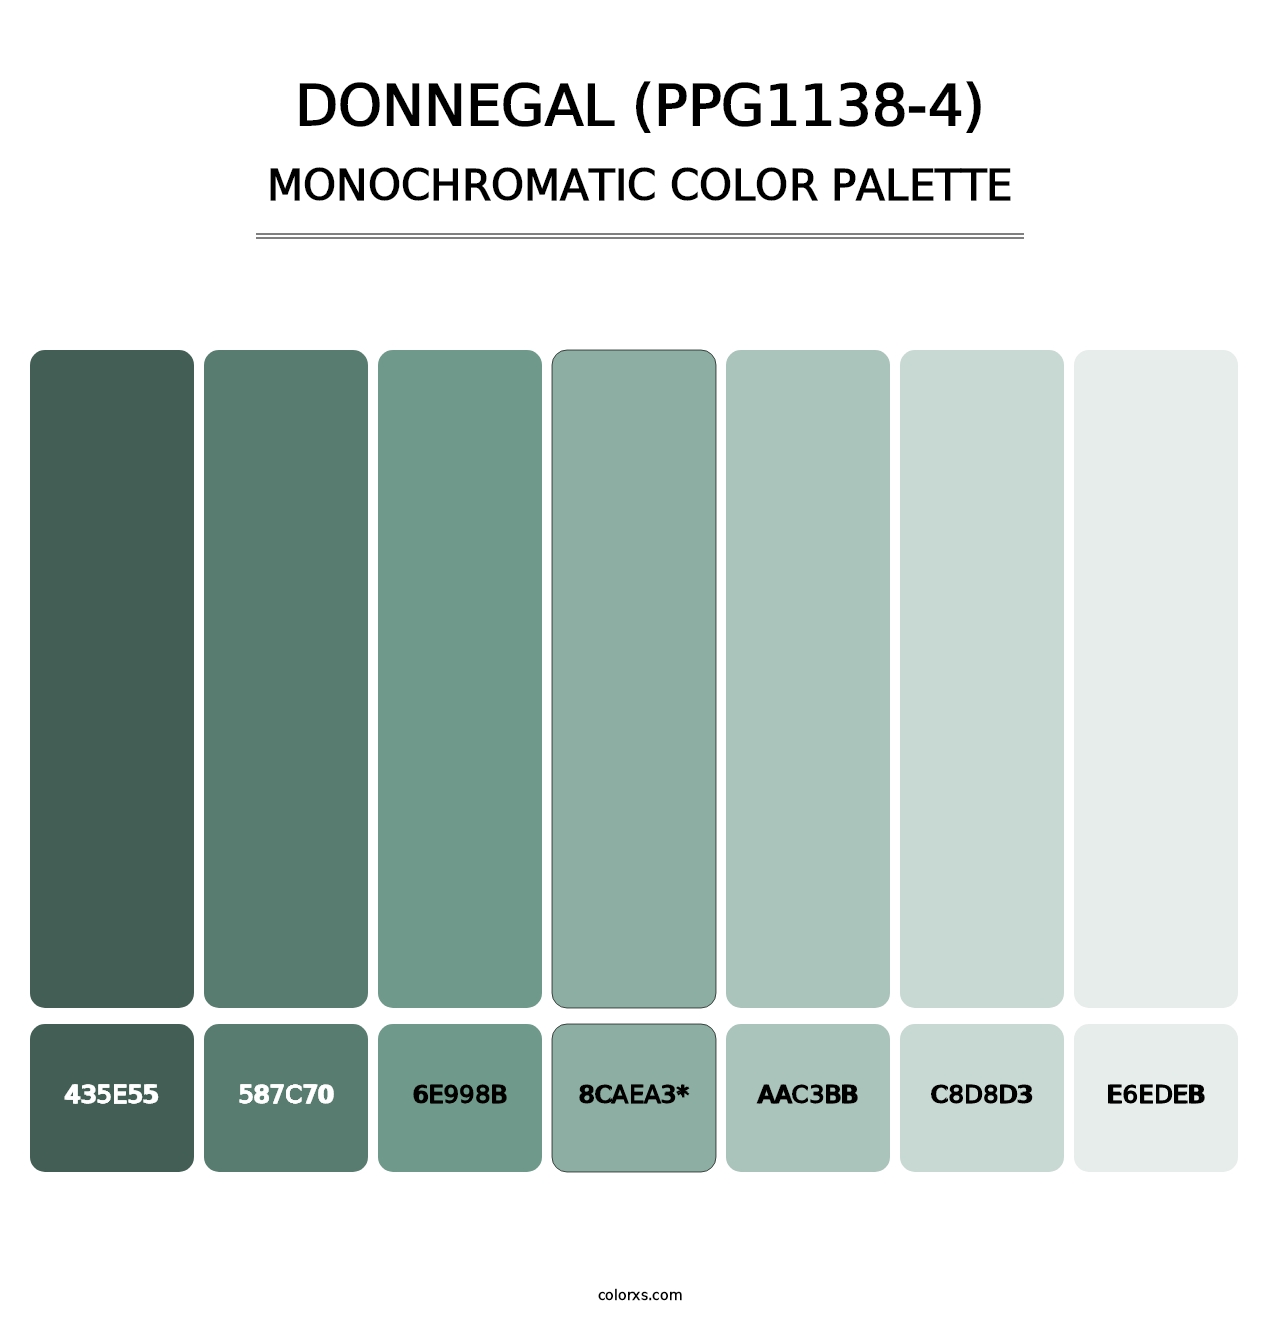 Donnegal (PPG1138-4) - Monochromatic Color Palette